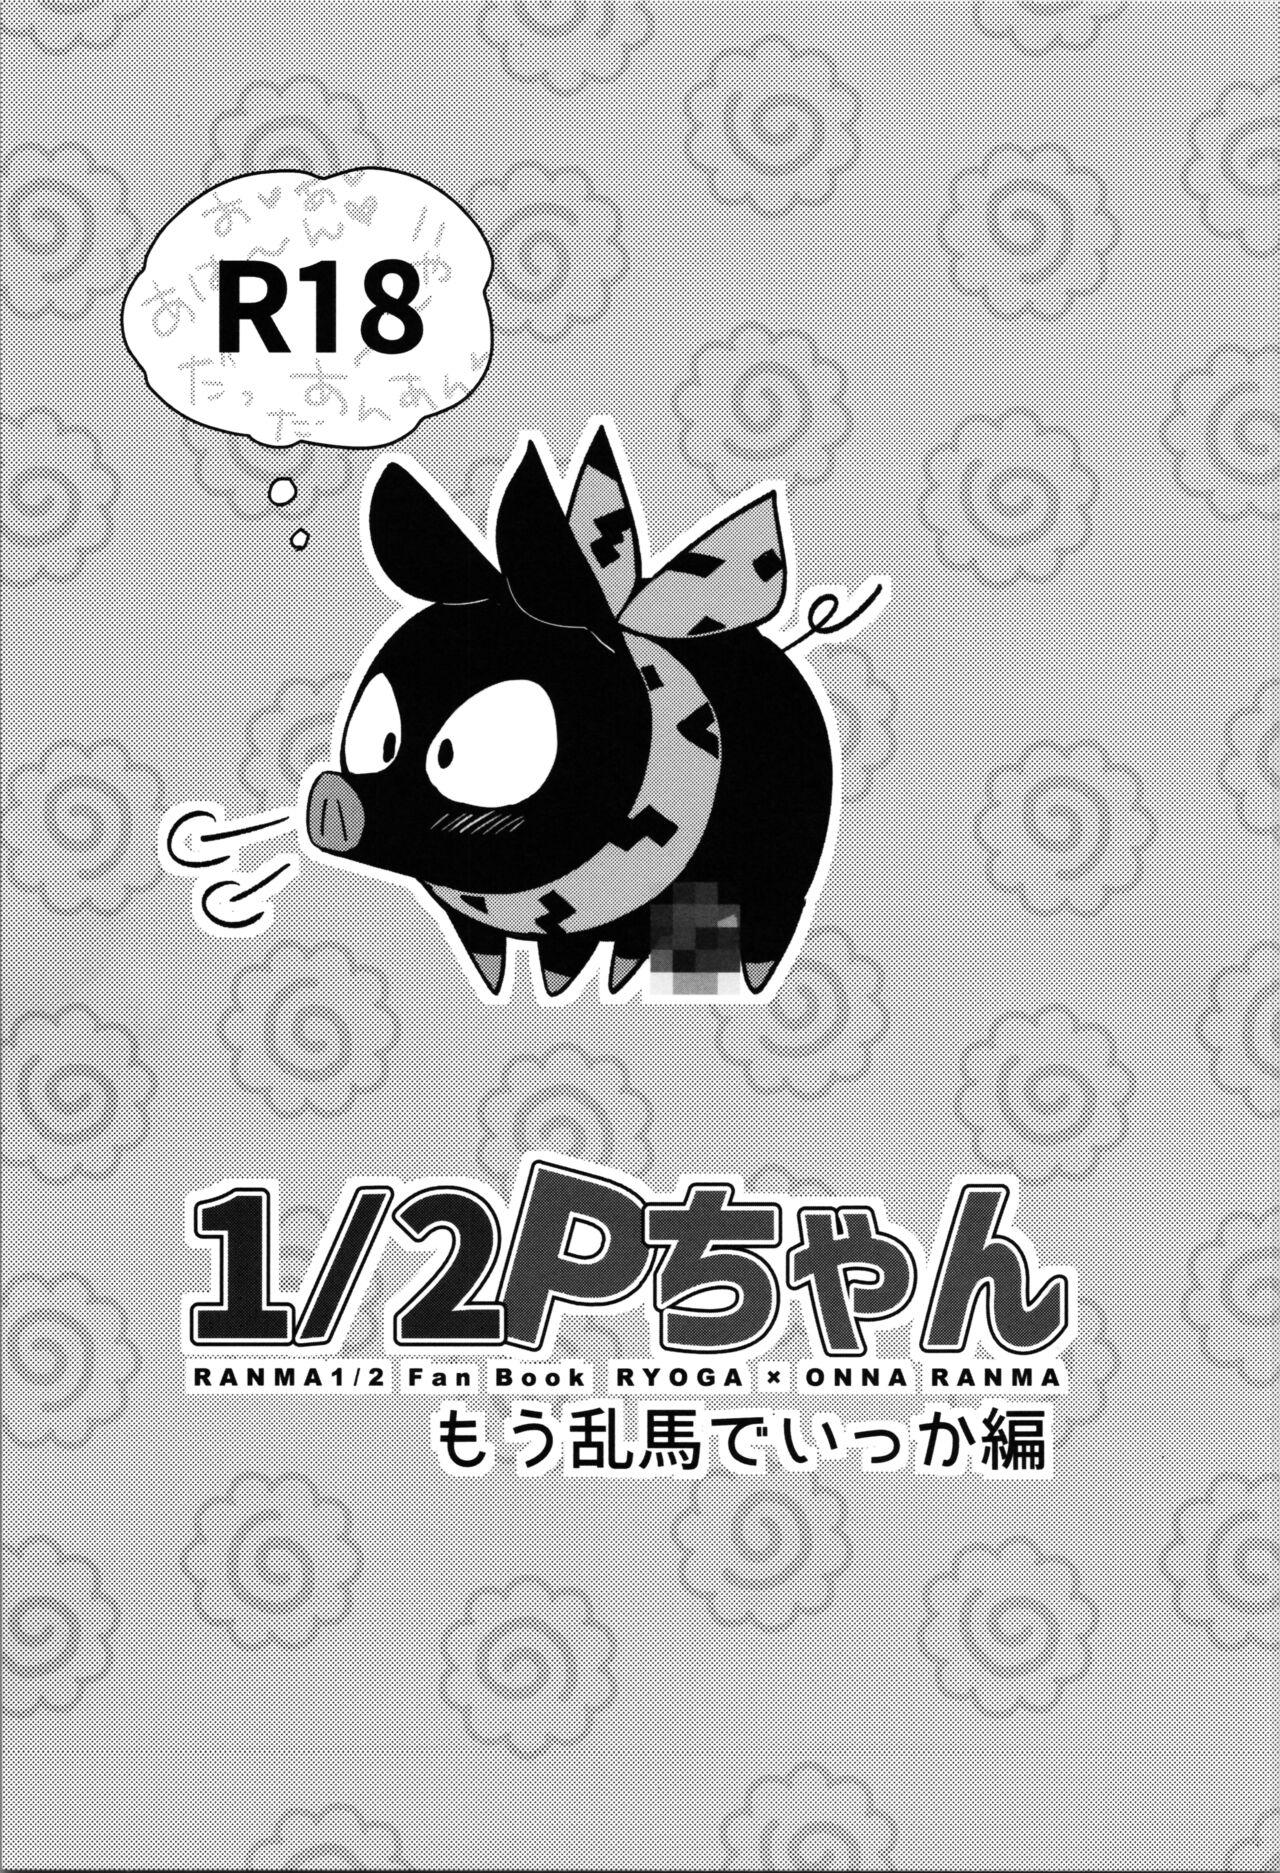 Bang Bros 1/2P-chan Momo Ranma de Ikka edition - Ranma 12 Cougar - Picture 1